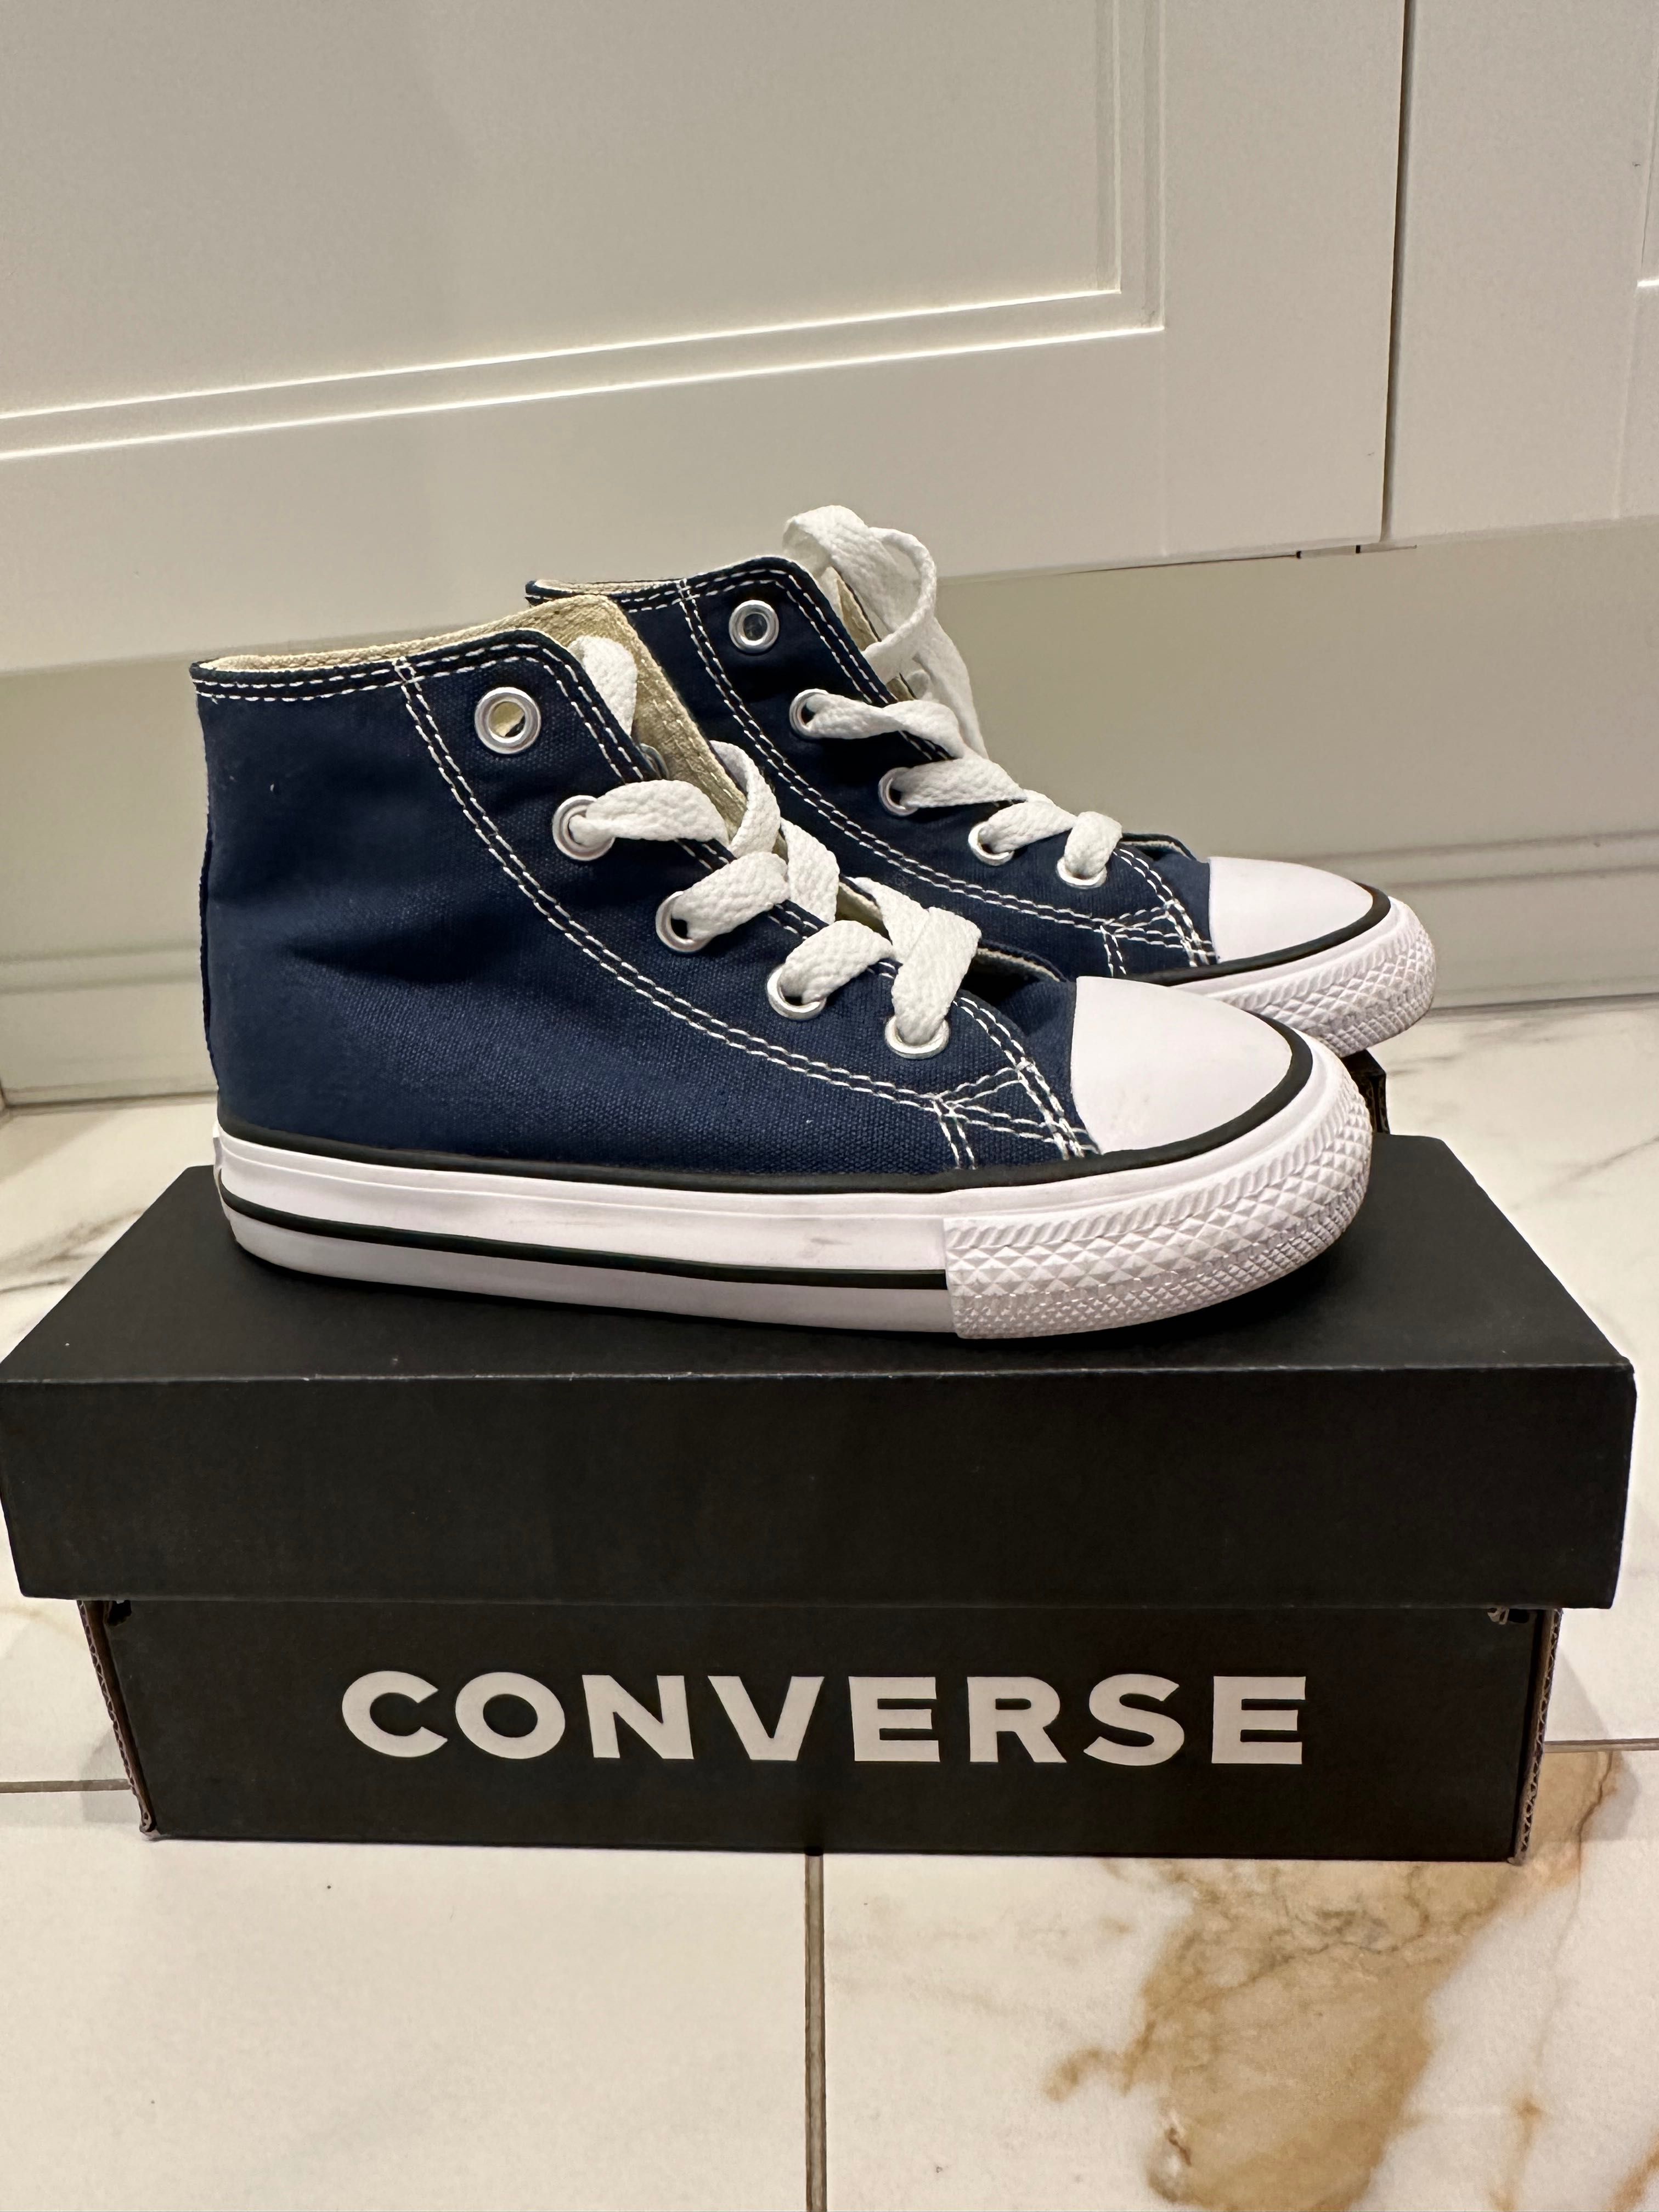 Дитячі кеди Converse 7J233 темно-сині 23 розмір (14 см)